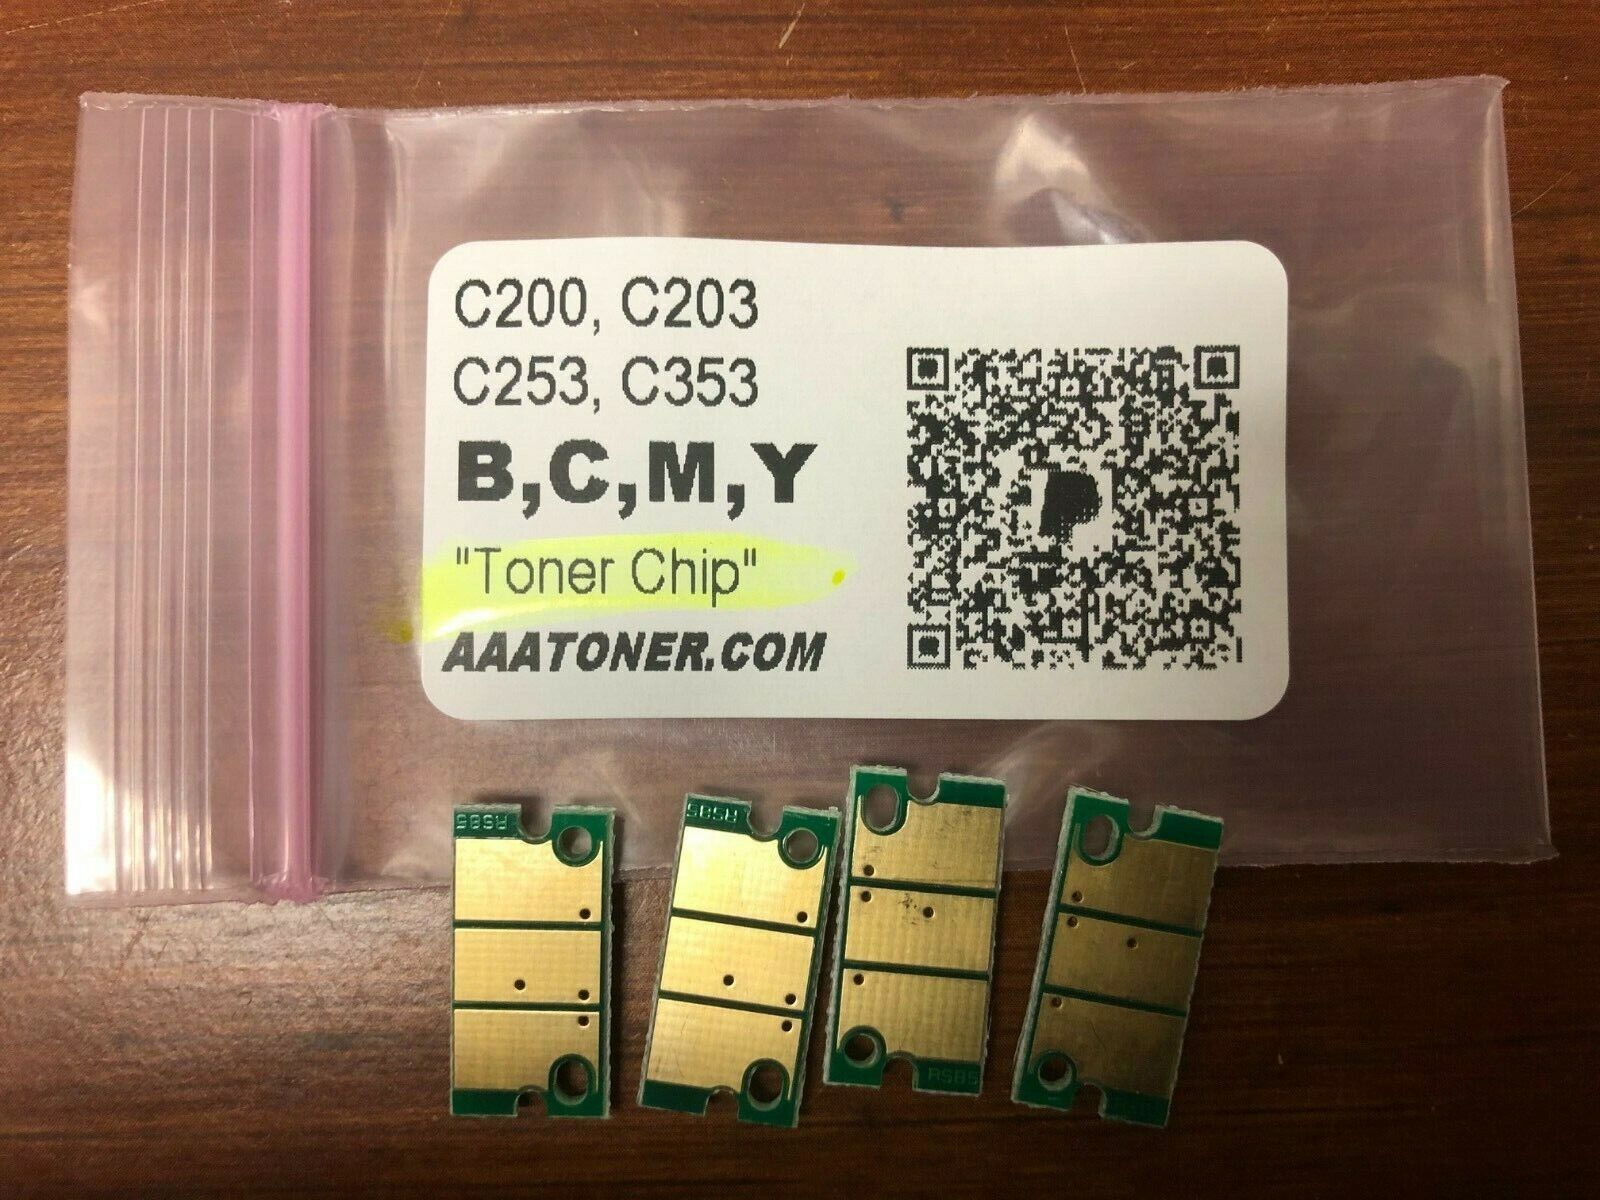 4 x Toner Chip Refill for Konica Minolta Bizhub C200, C203, C253, C353 (TN214)